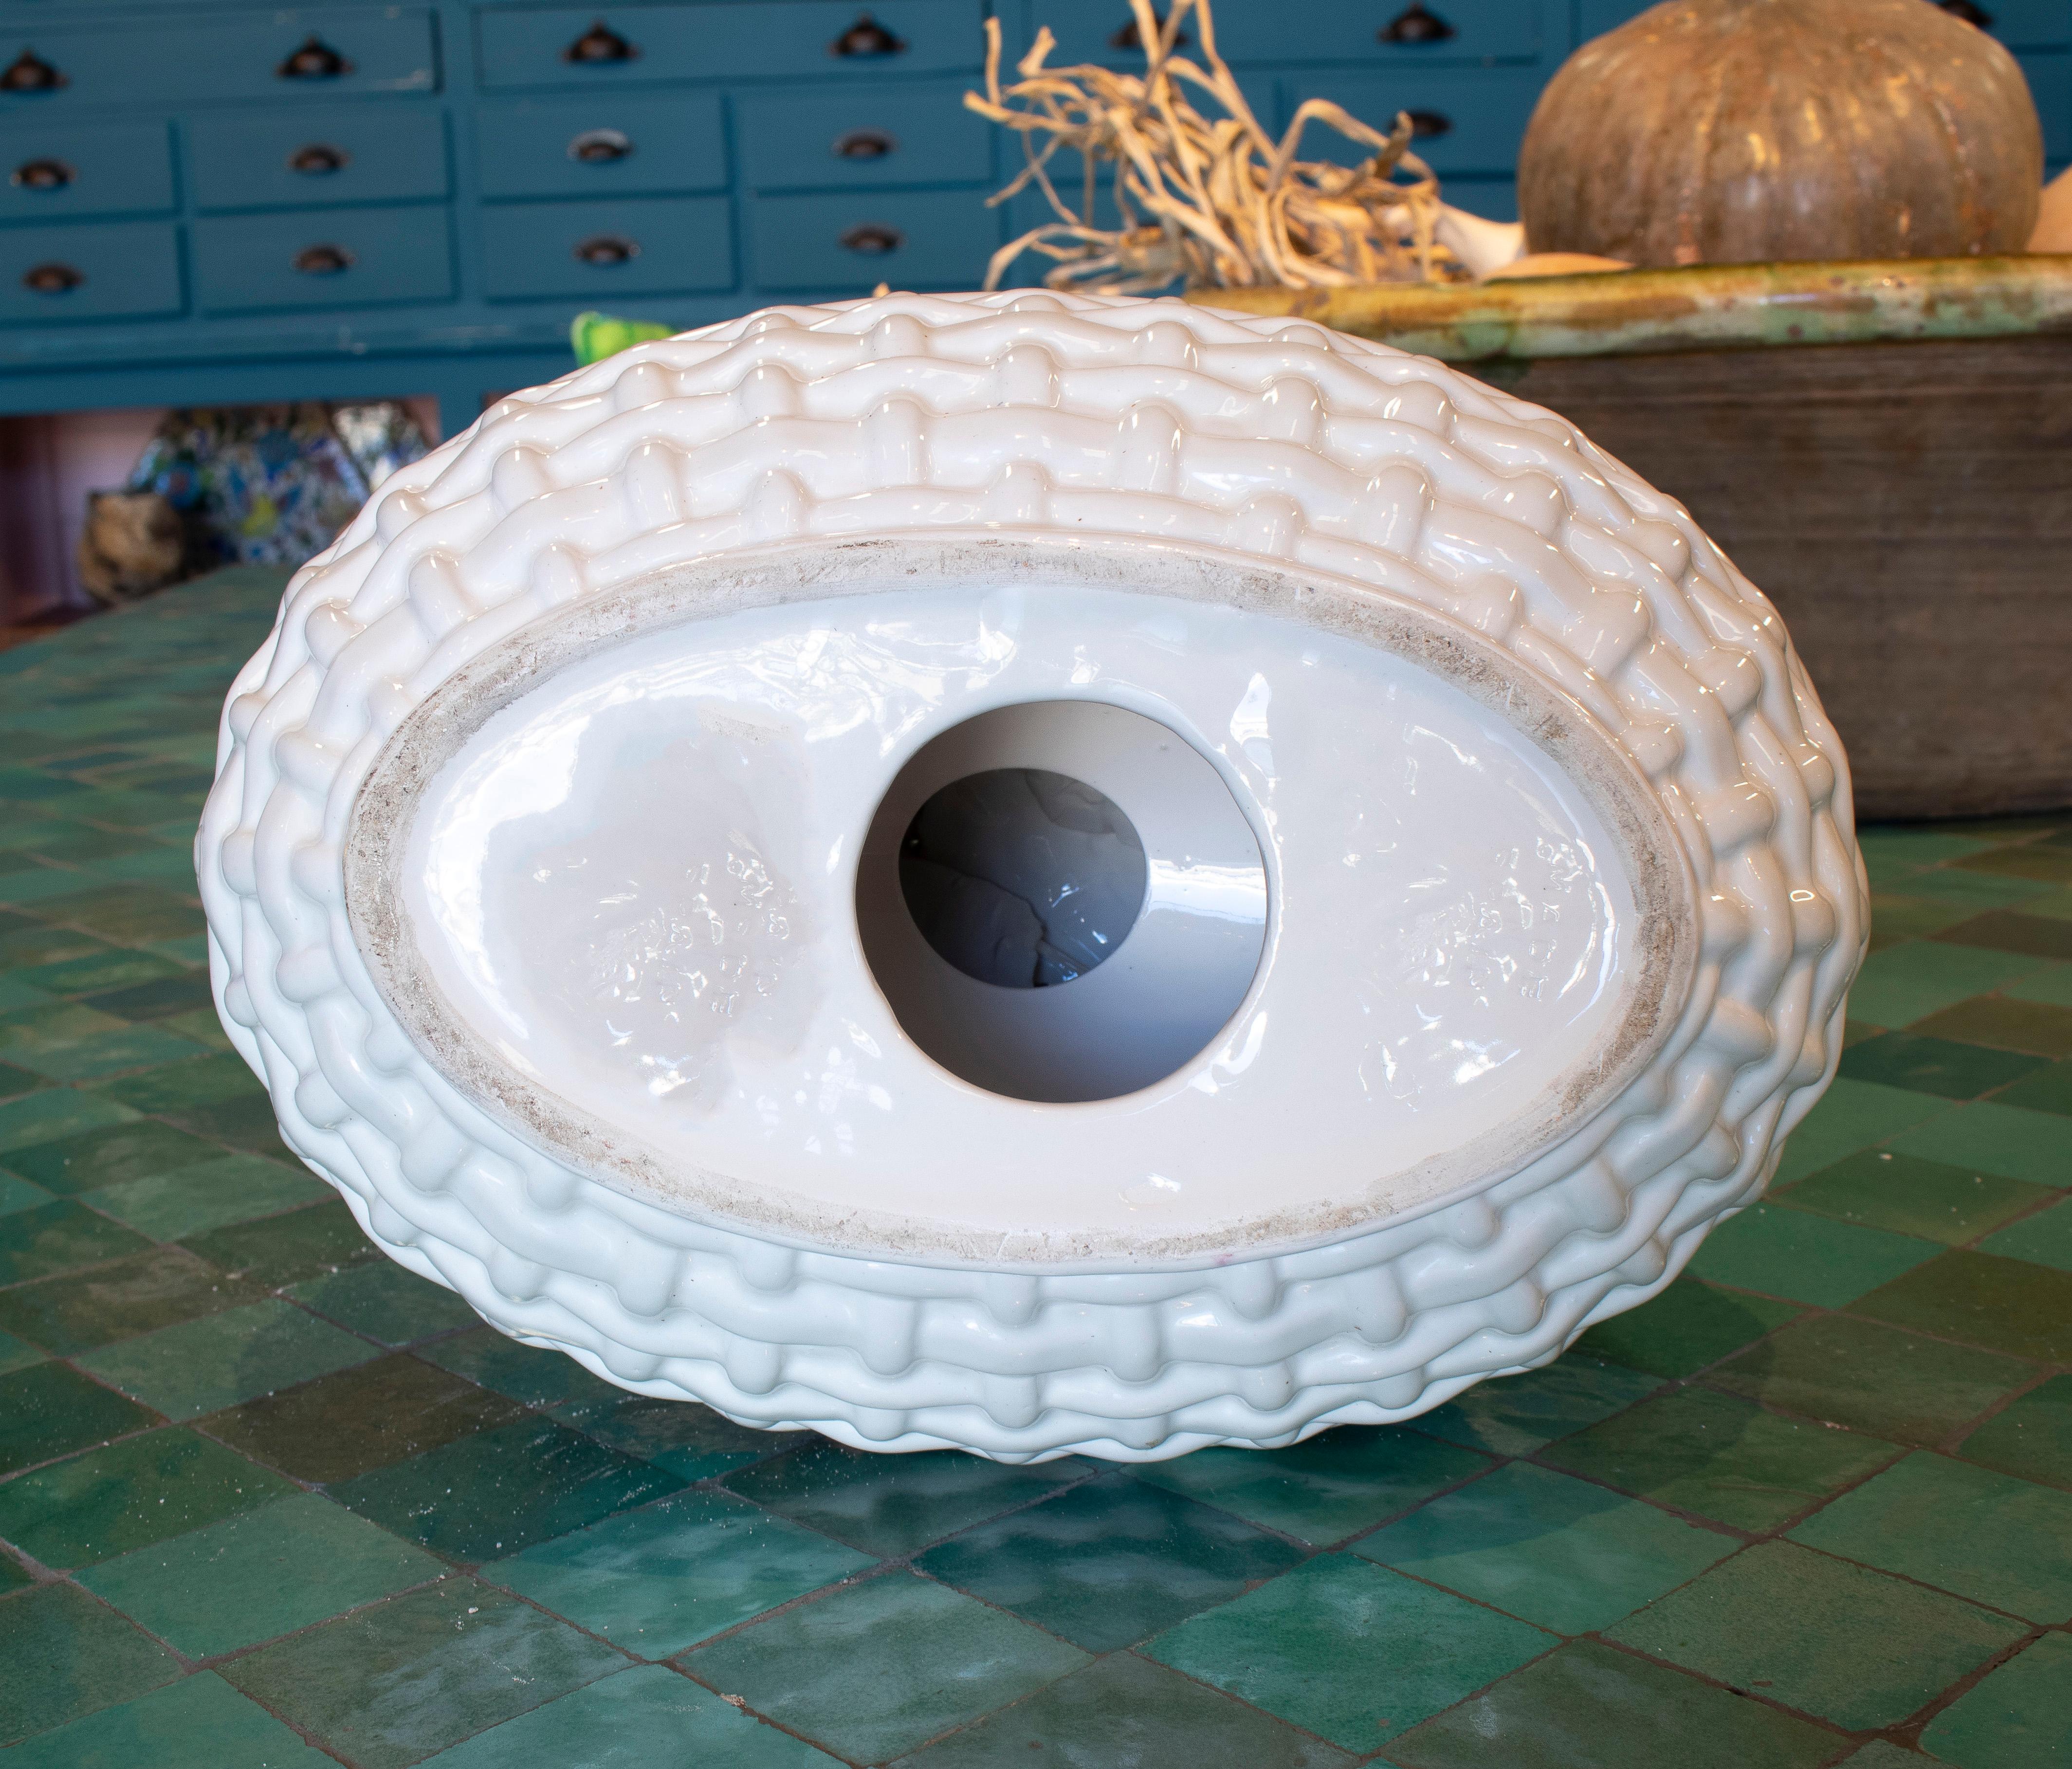 Ceramic 1970s Spanish White Glazed Manises Pottery Fruit Basket Centerpiece